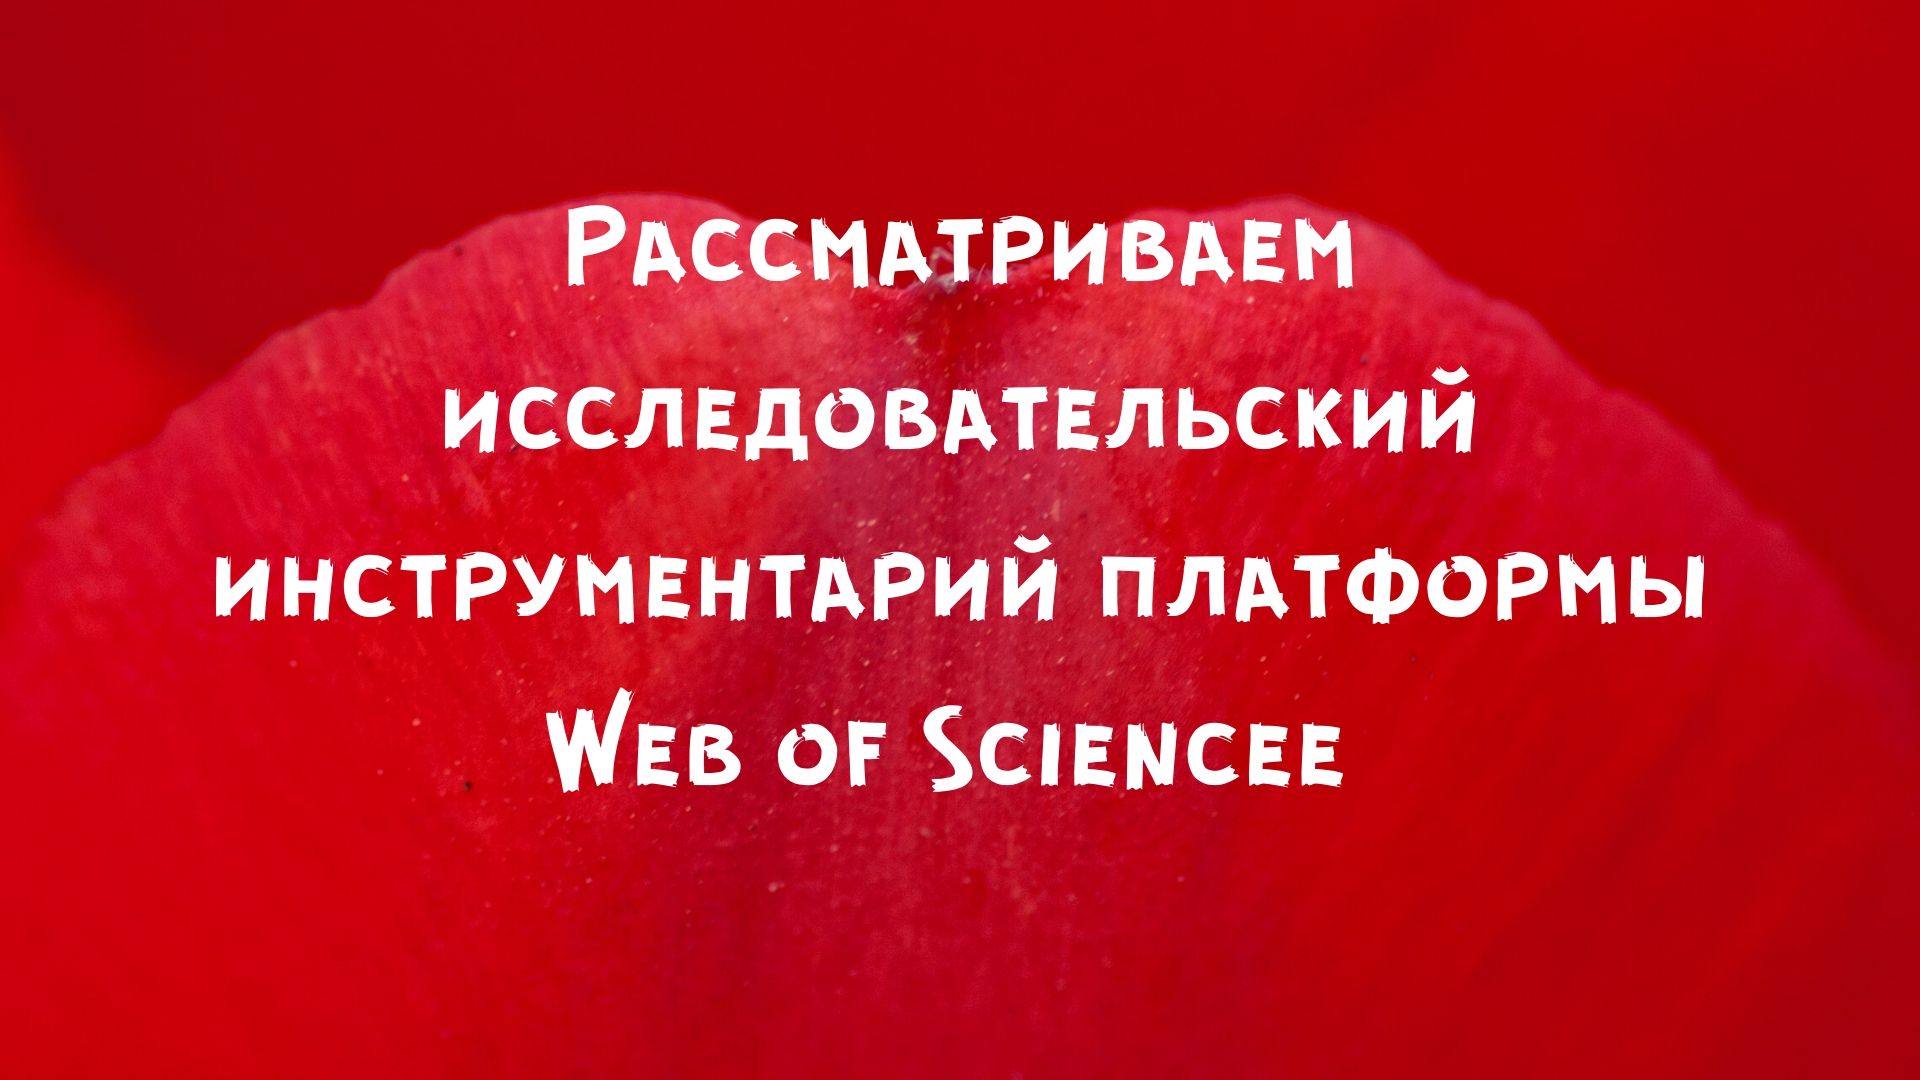 Рассматриваем исследовательский инструментарий платформы Web of Science